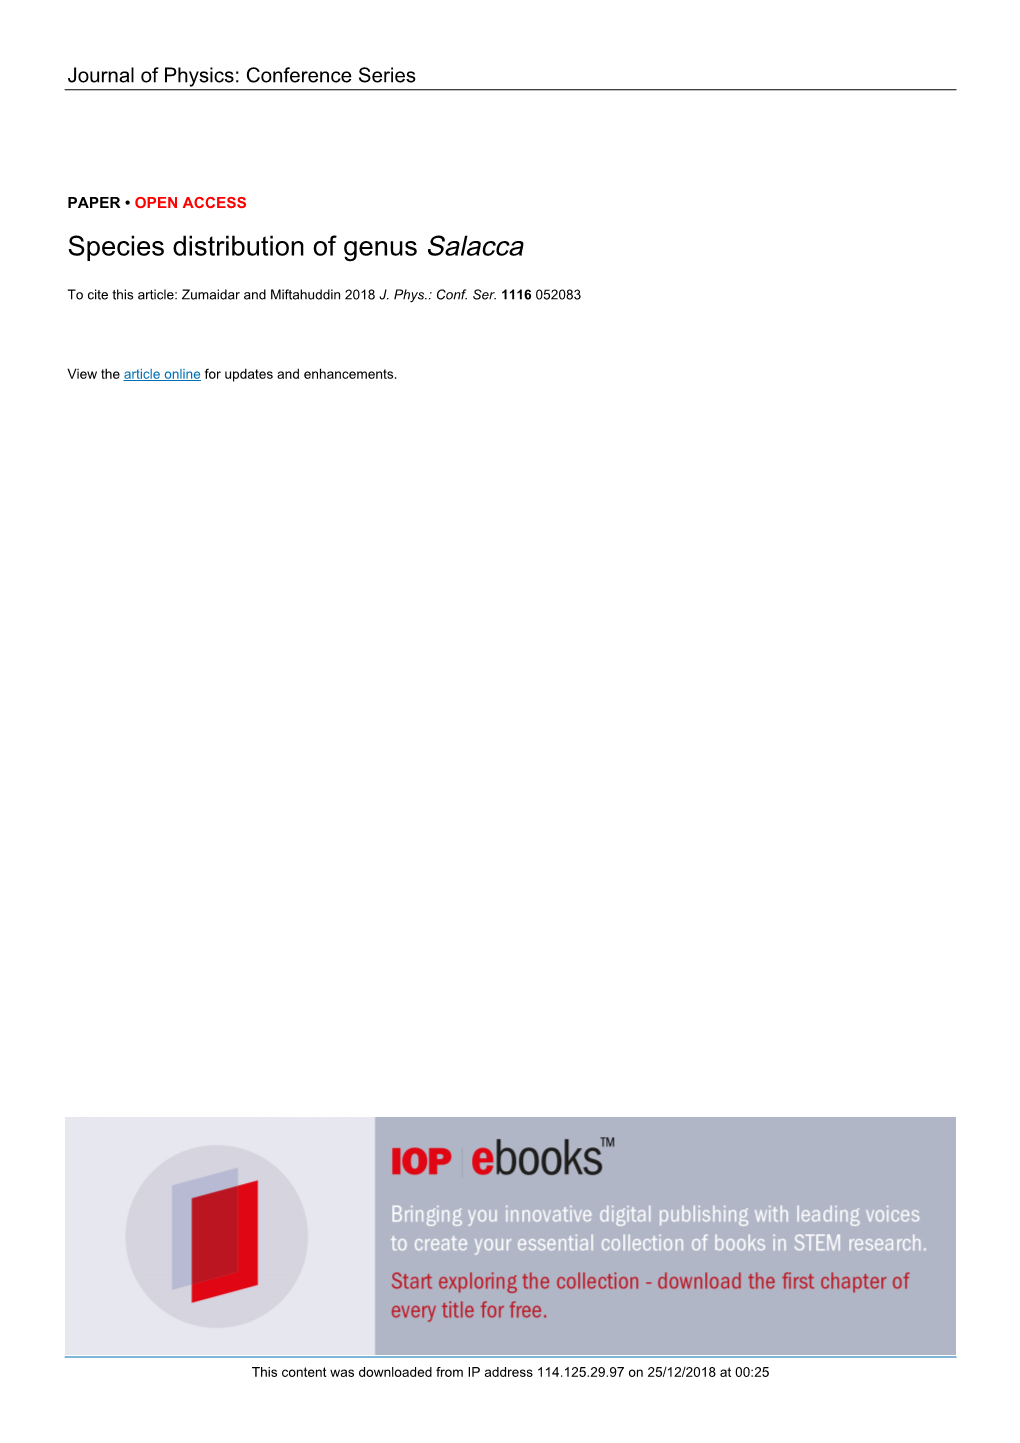 Species Distribution of Genus Salacca